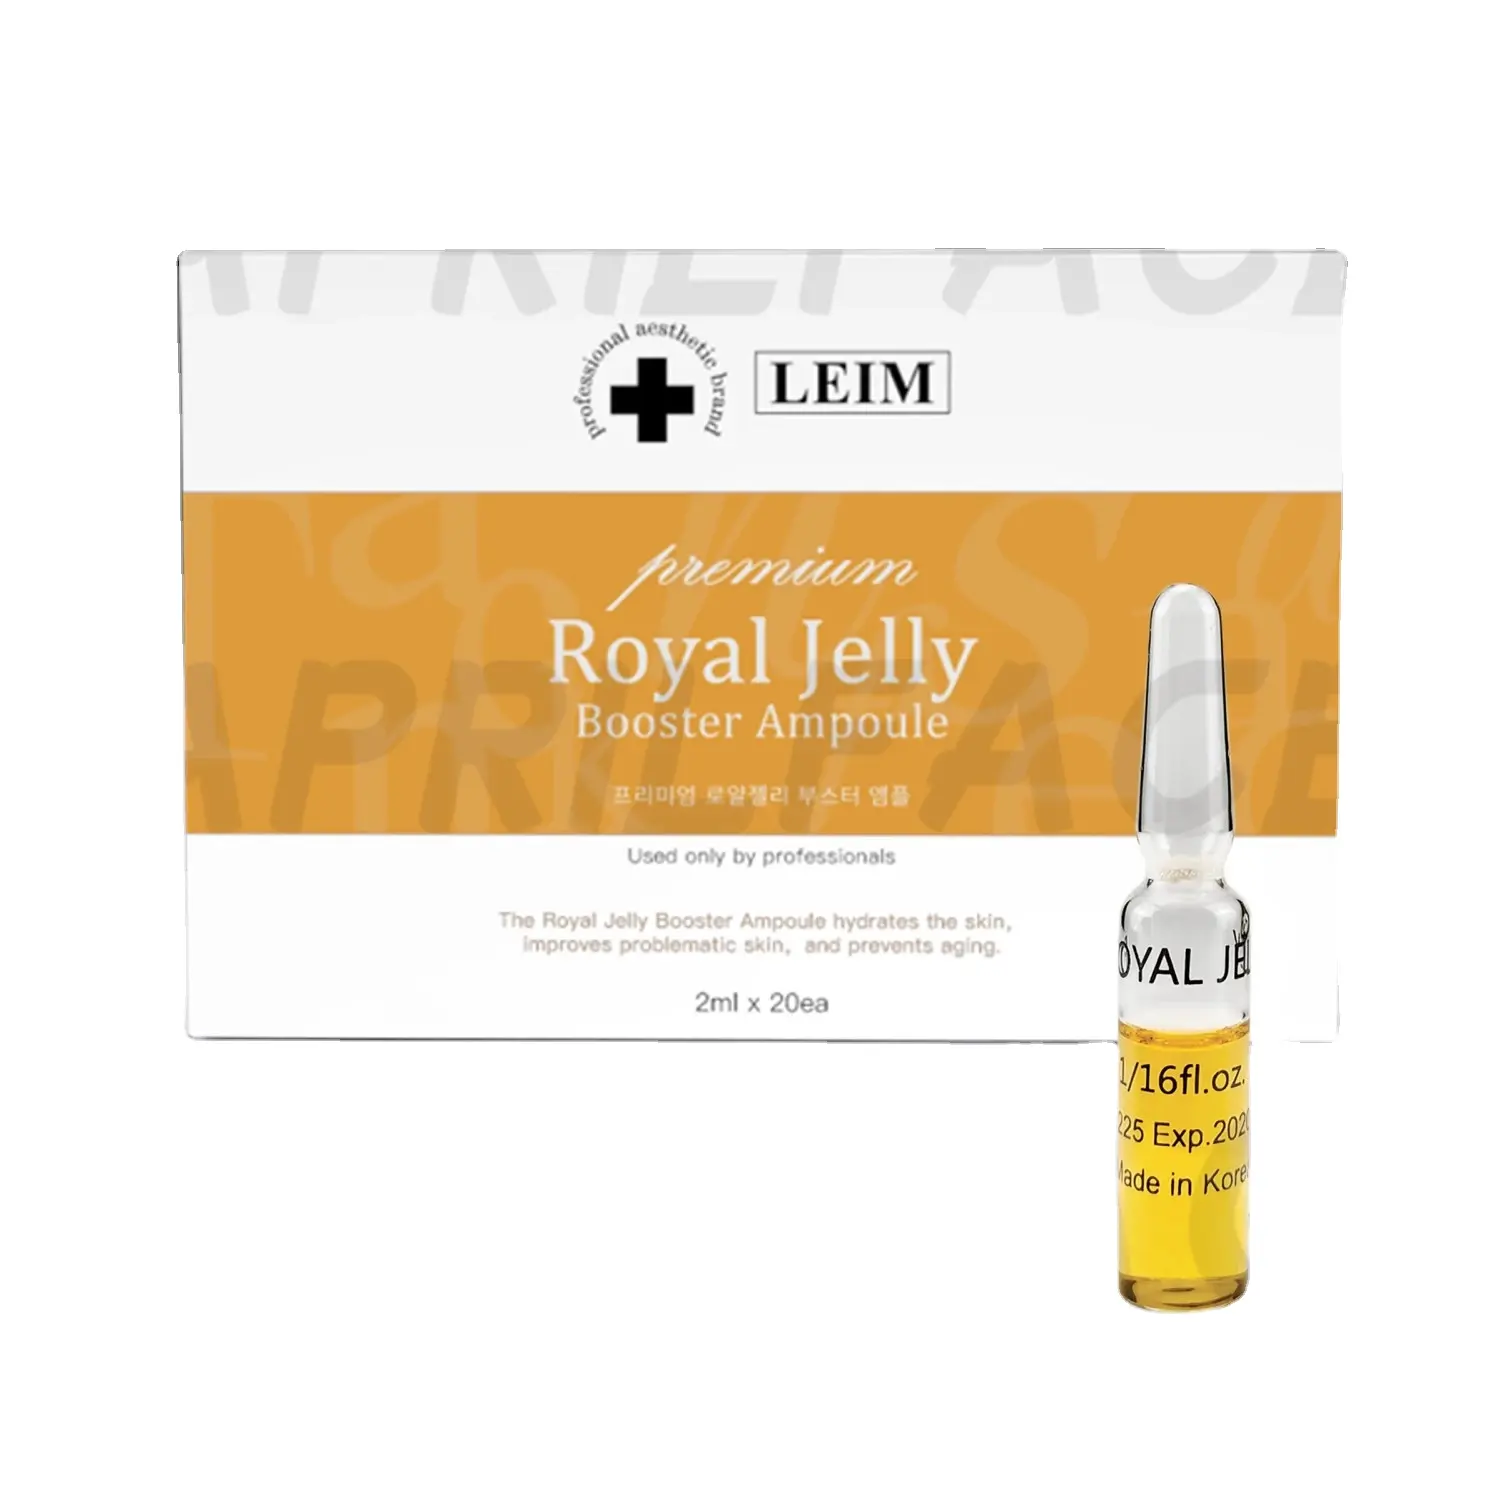 Royal jelly booster soro de ampola, anti-envelhecimento, rugas, mesoterapia, soro da coreia